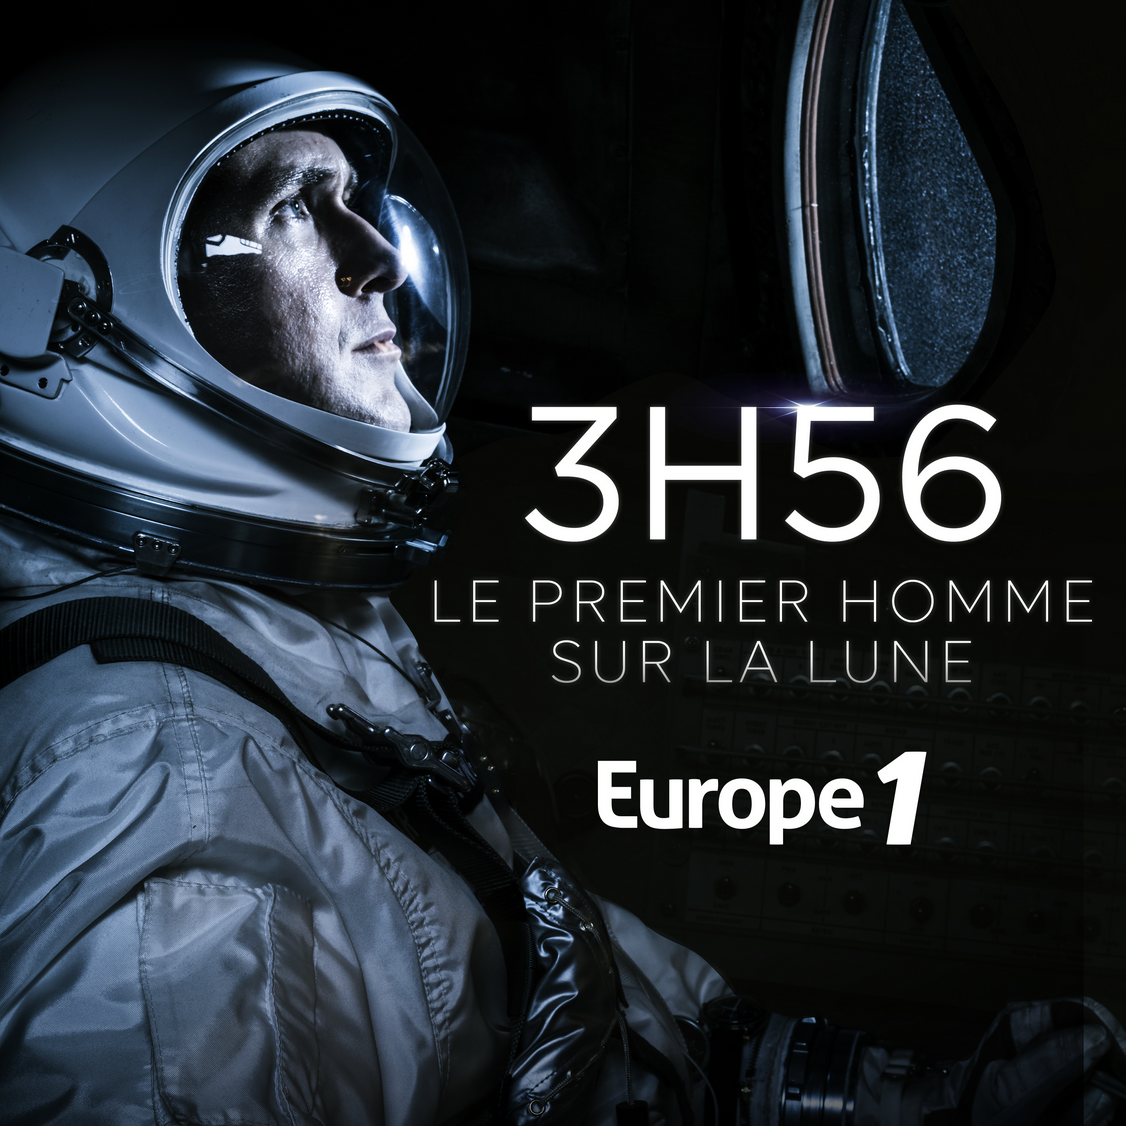 Europe 1 lance "3h56, le premier homme sur la Lune"